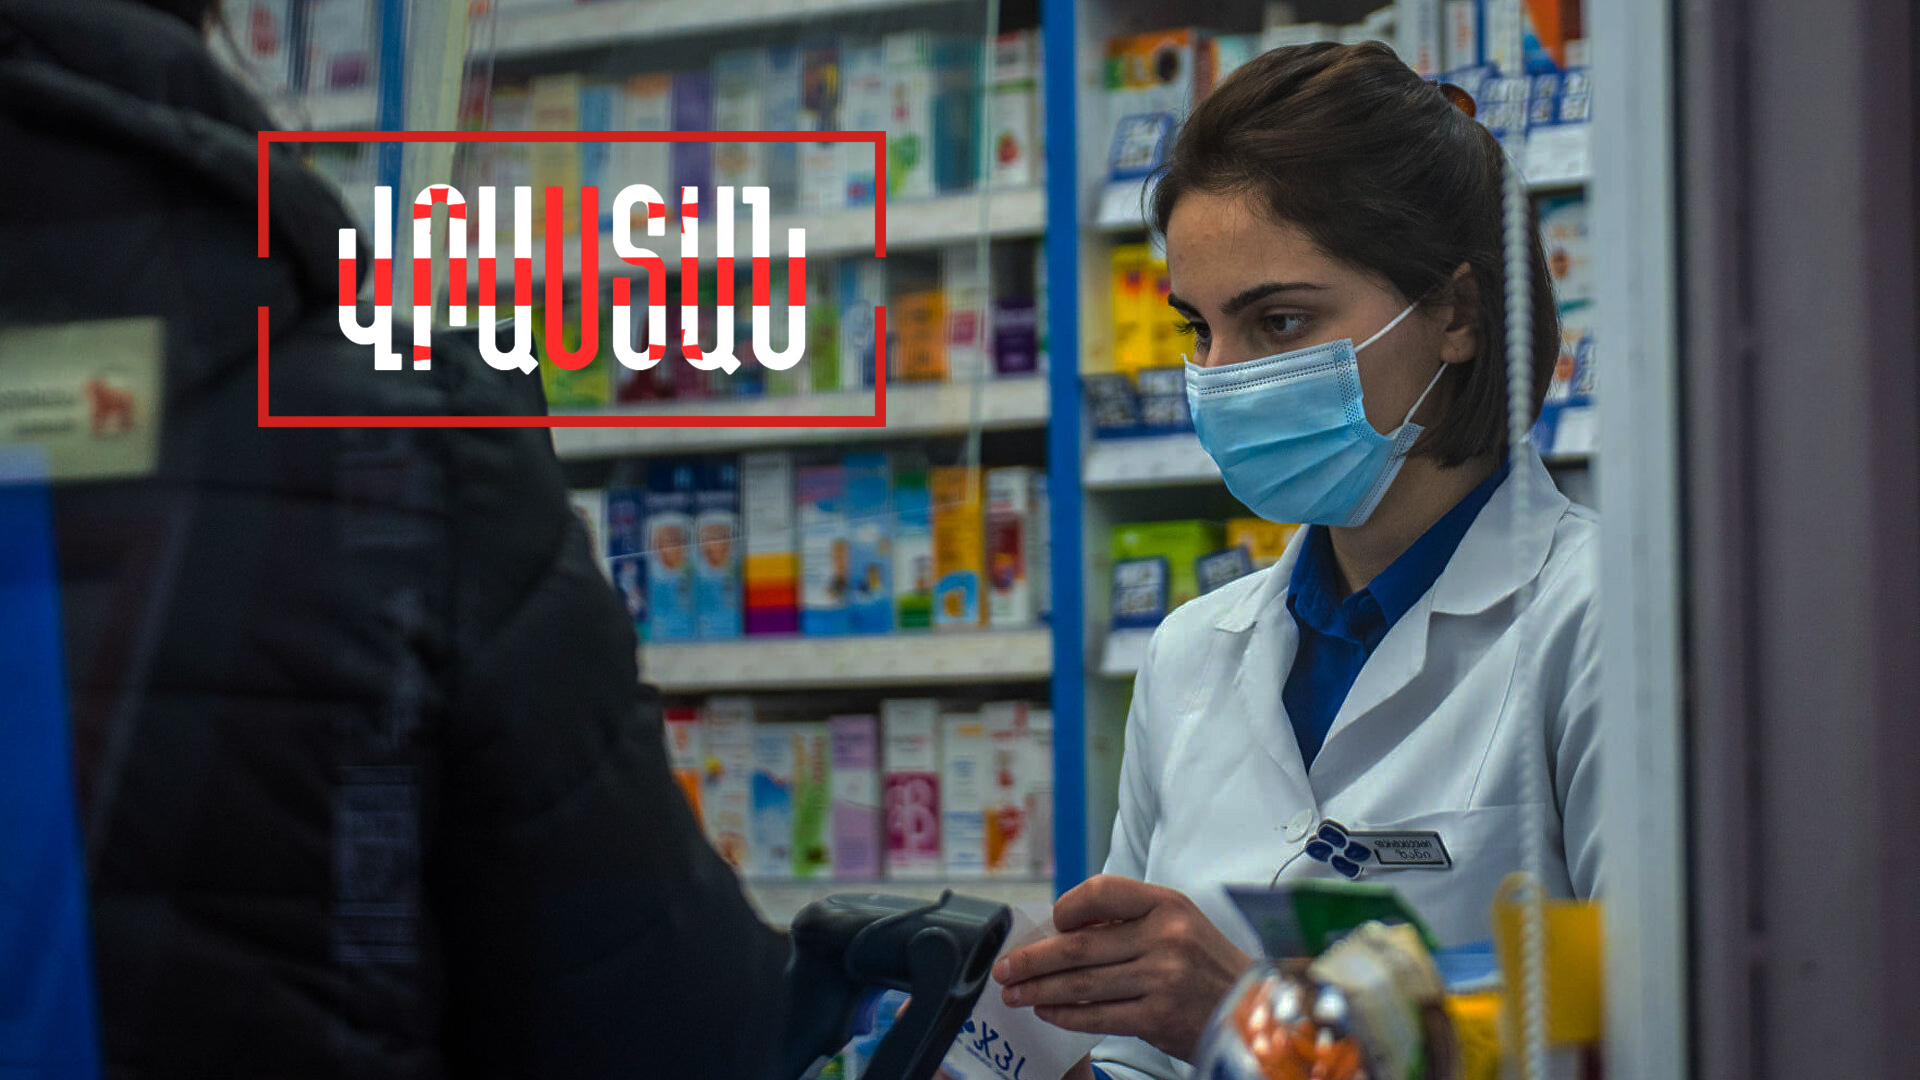 Թուրքական դեղամիջոցների շուկան բացվում է Վրաստանի համար․ Վրաստանն այս շաբաթ